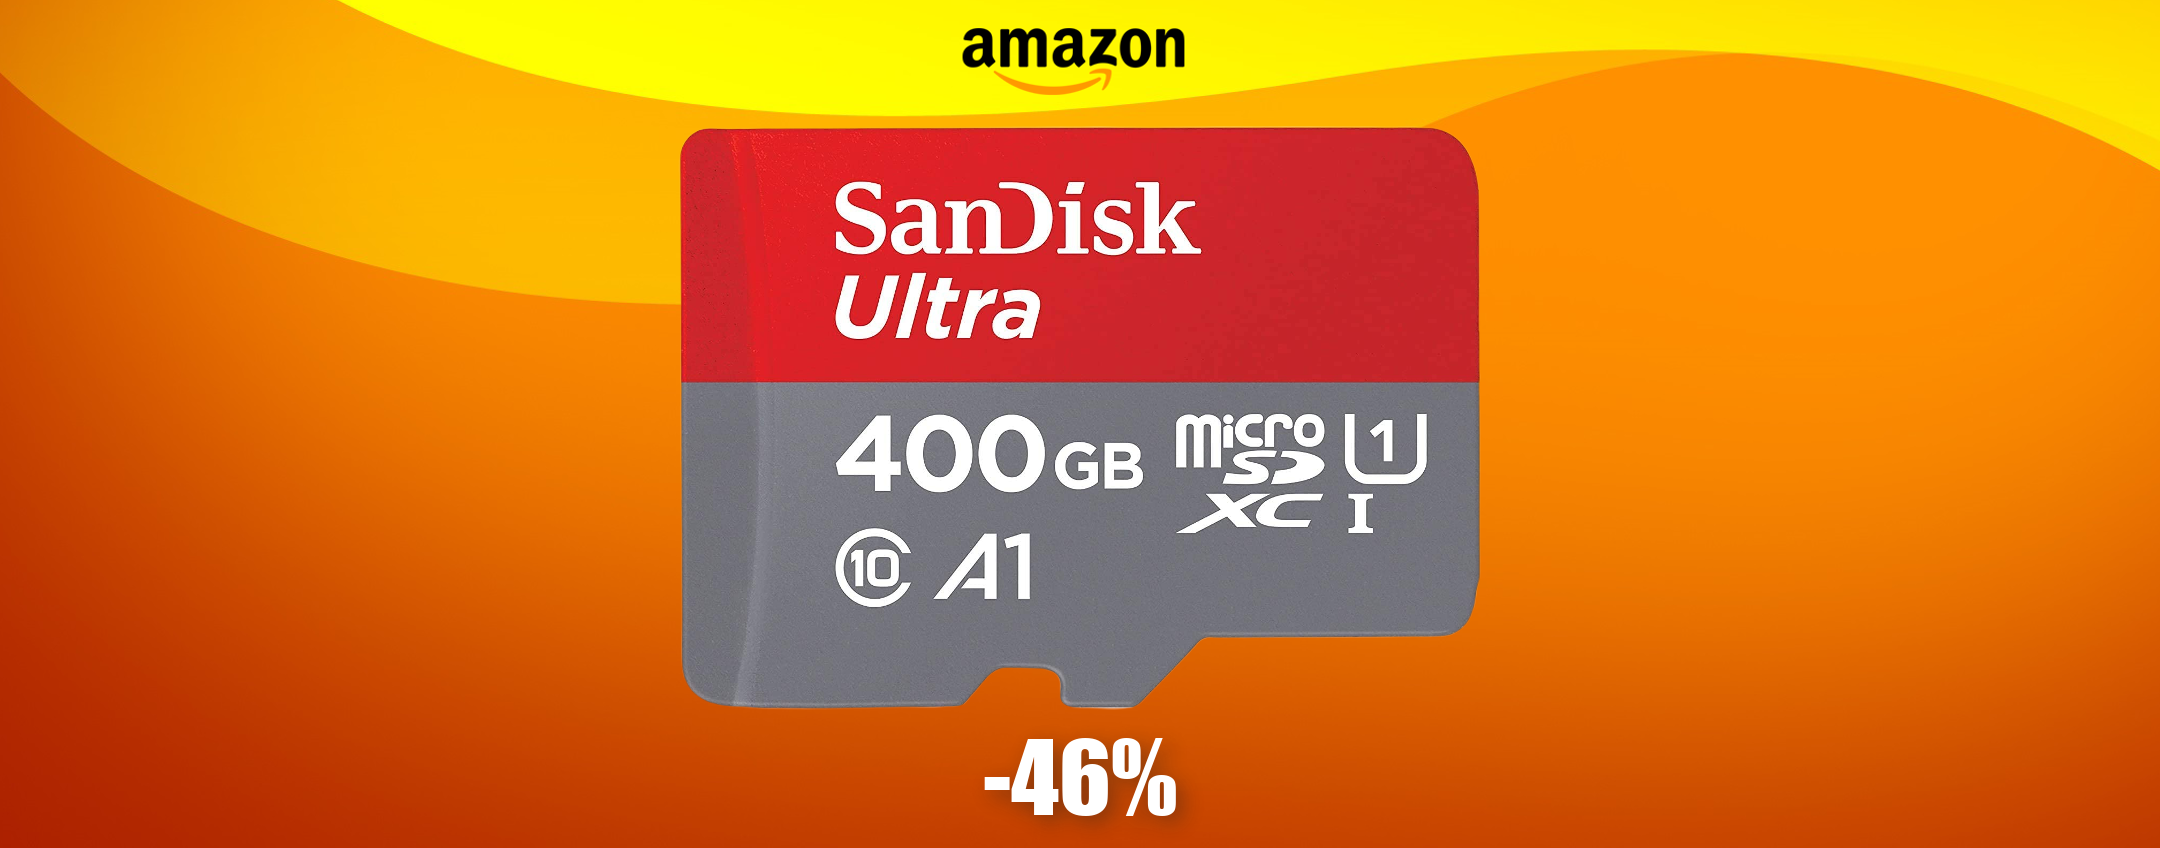 MicroSD SanDisk 400GB: sconto FOLLE per pochissimi giorni (-46%)